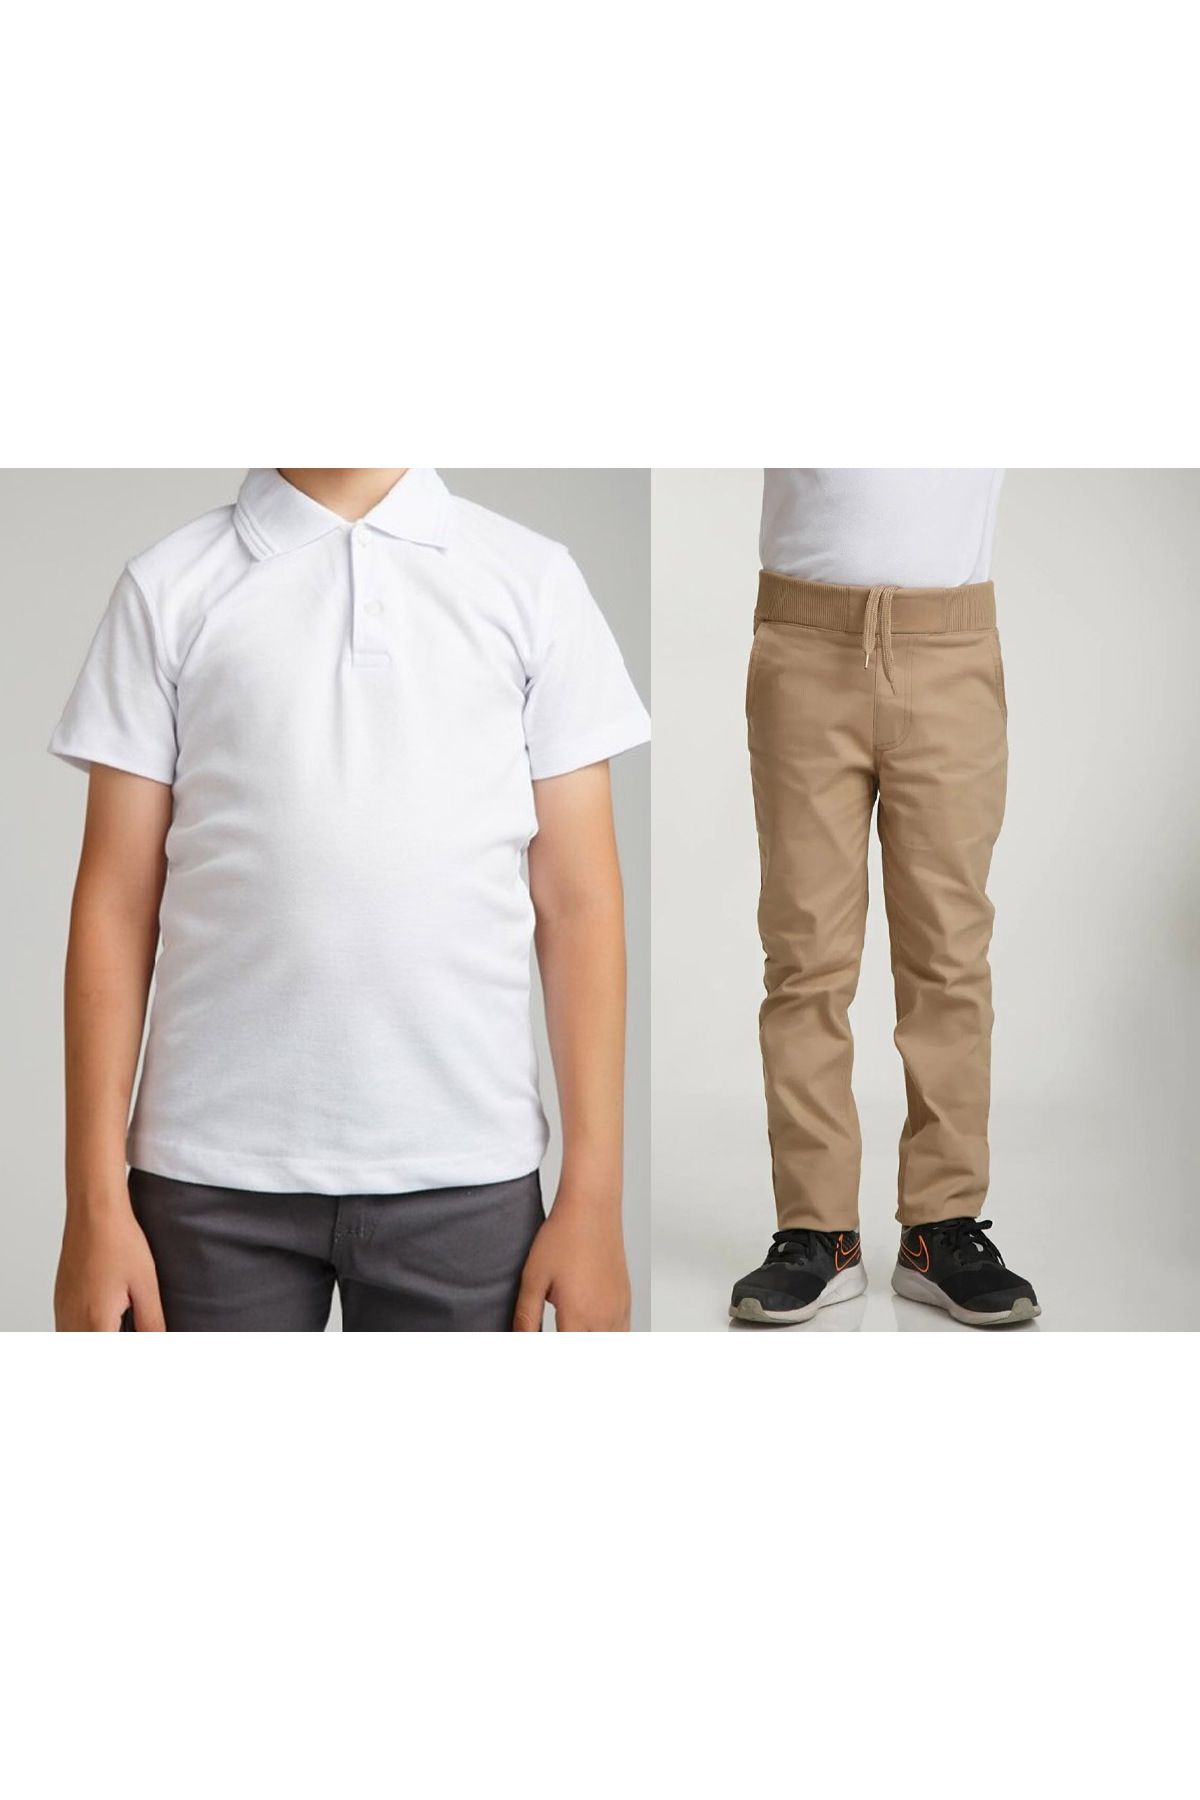 FATELLA Unisex çocuk okul ribana bel pantolon - beyaz kısa kol Polo yaka Tişört 2li takım